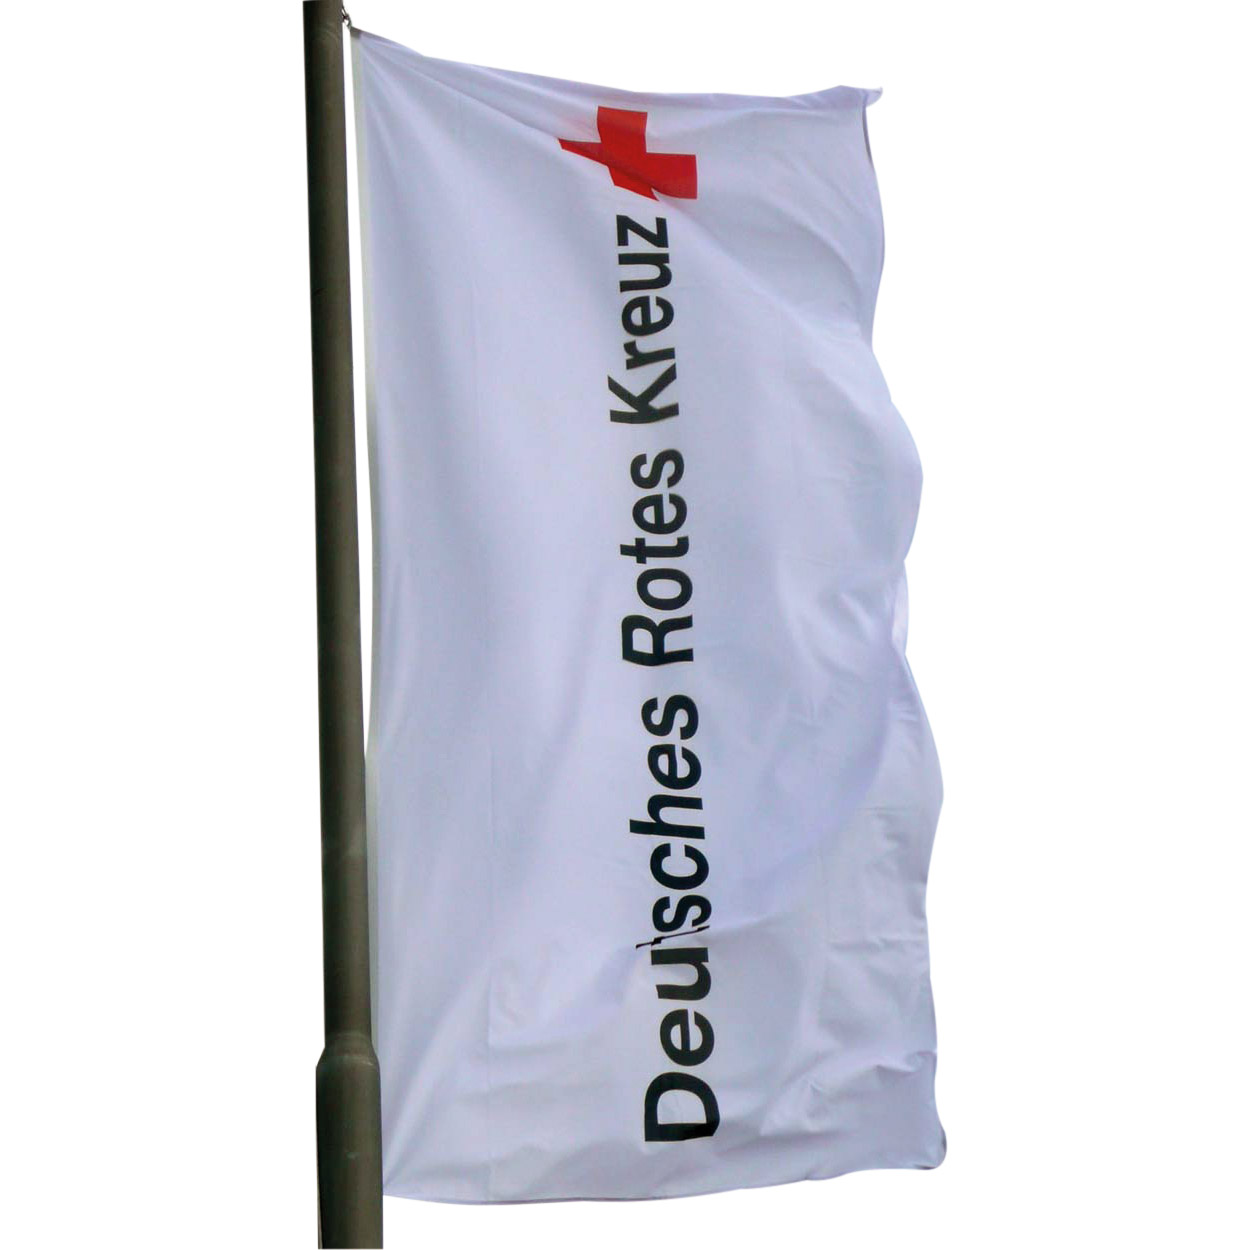 DRK-Flagge/Fahne mit DRK - Langlogo